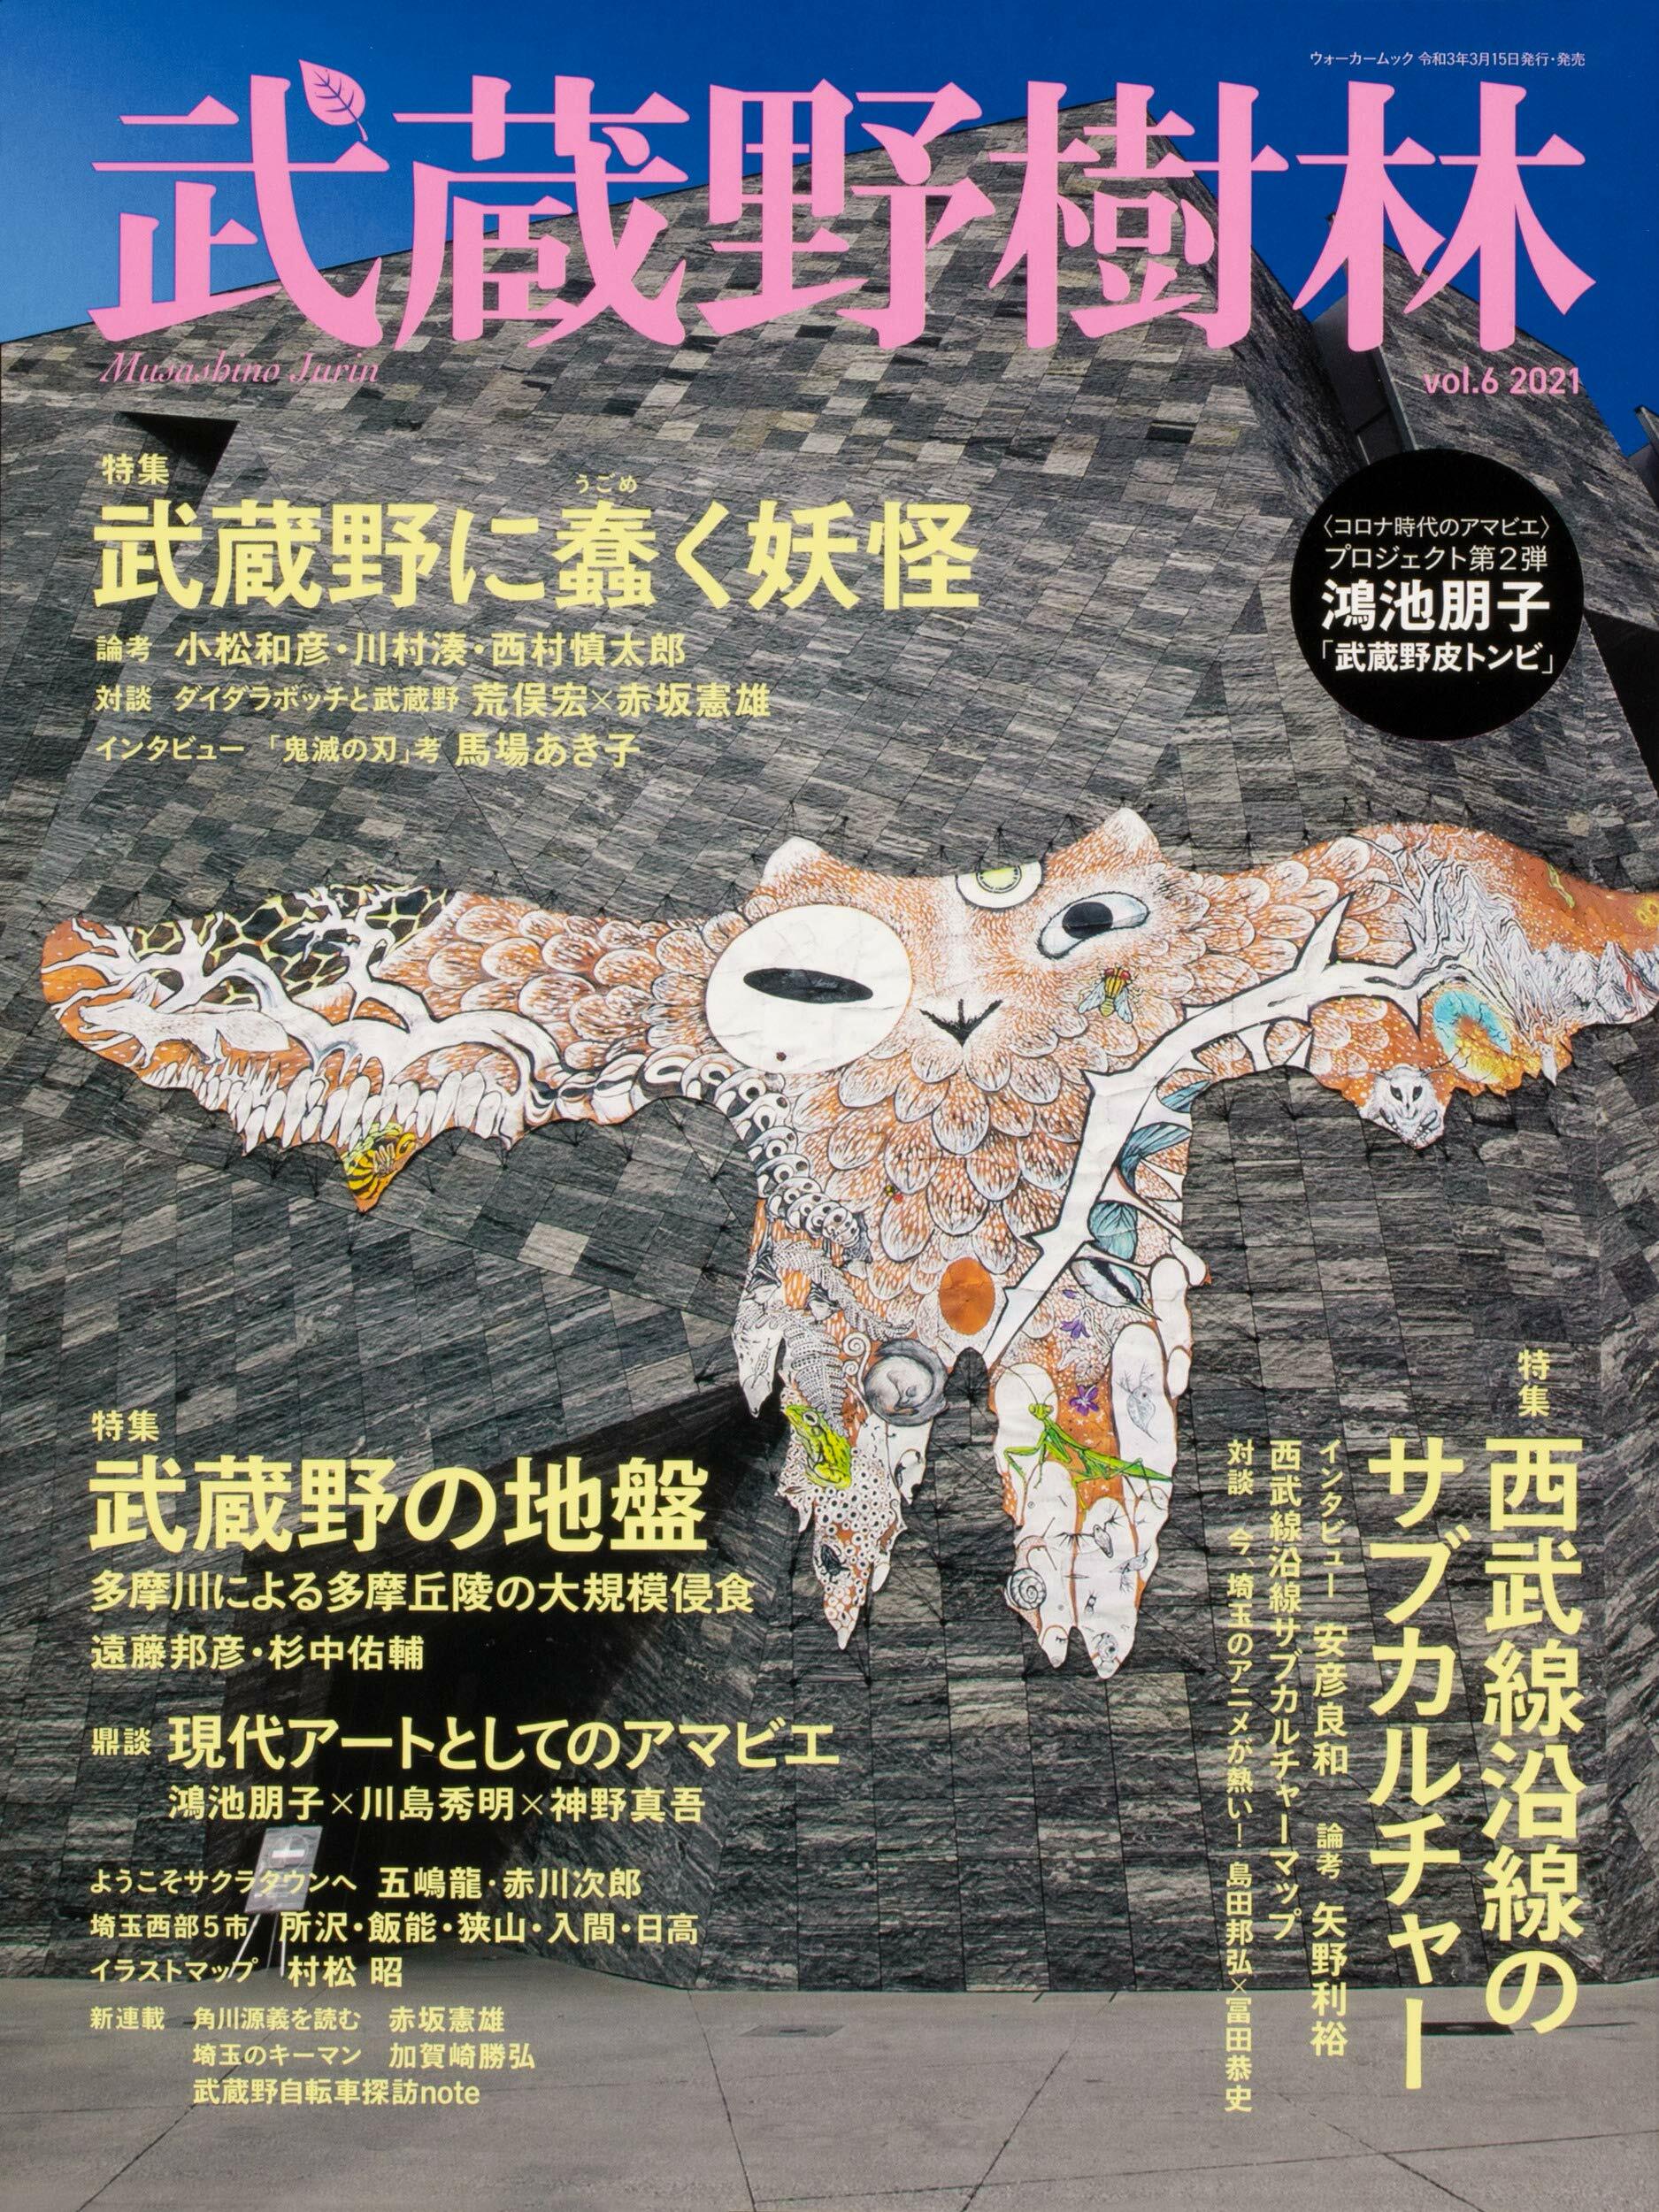 武藏野樹林 vol.6 (ウォ-カ-ムック)